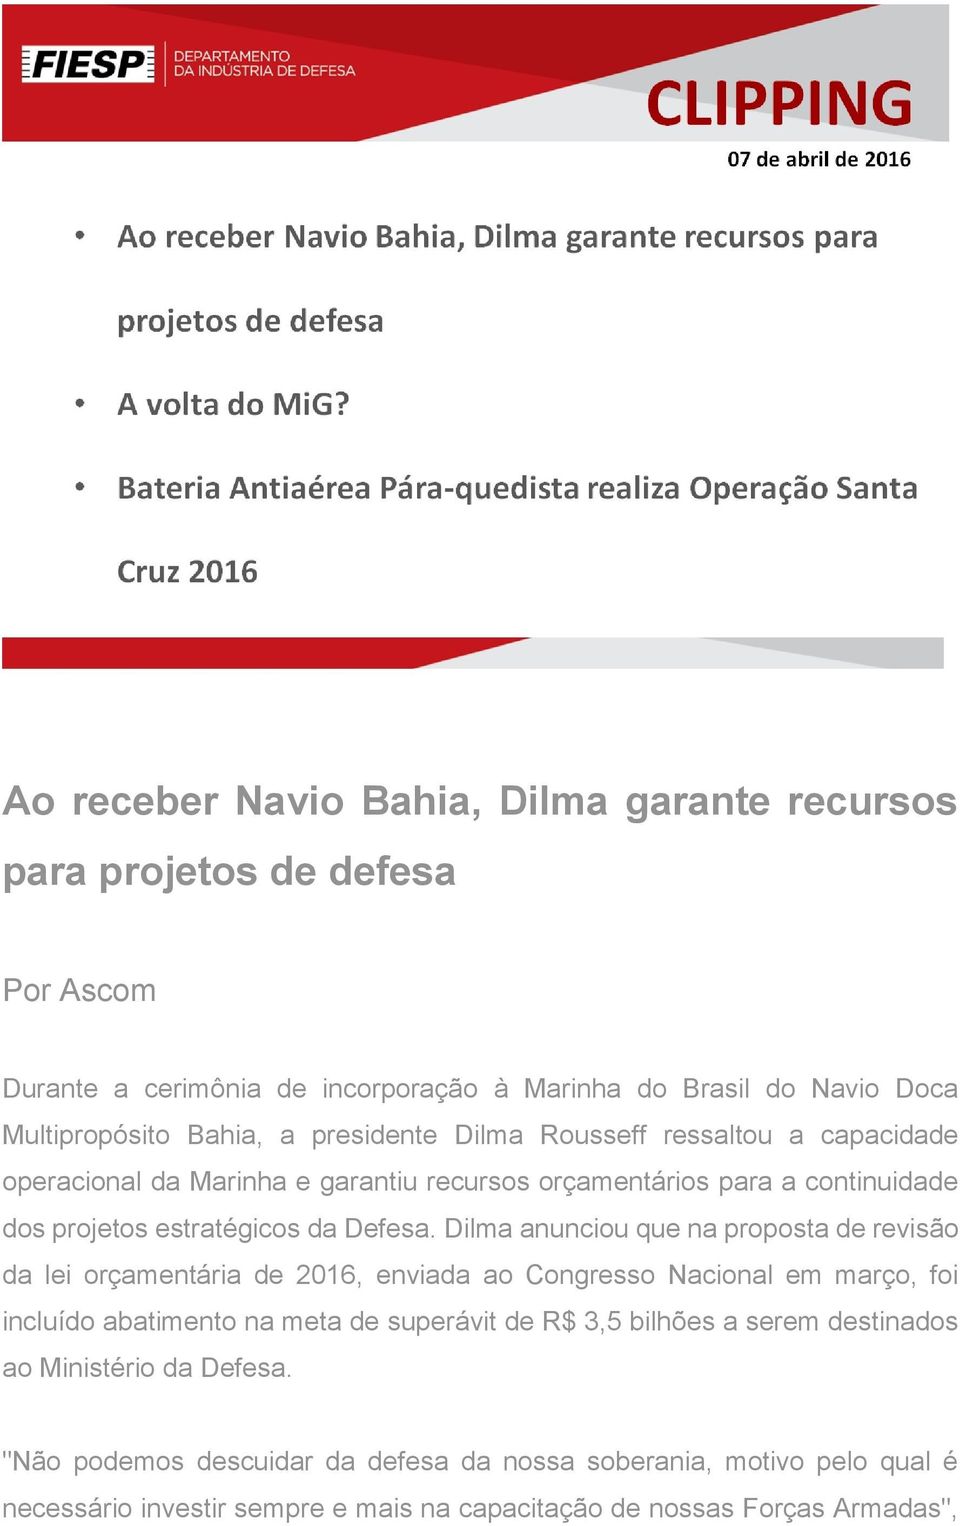 Dilma anunciou que na proposta de revisão da lei orçamentária de 2016, enviada ao Congresso Nacional em março, foi incluído abatimento na meta de superávit de R$ 3,5 bilhões a